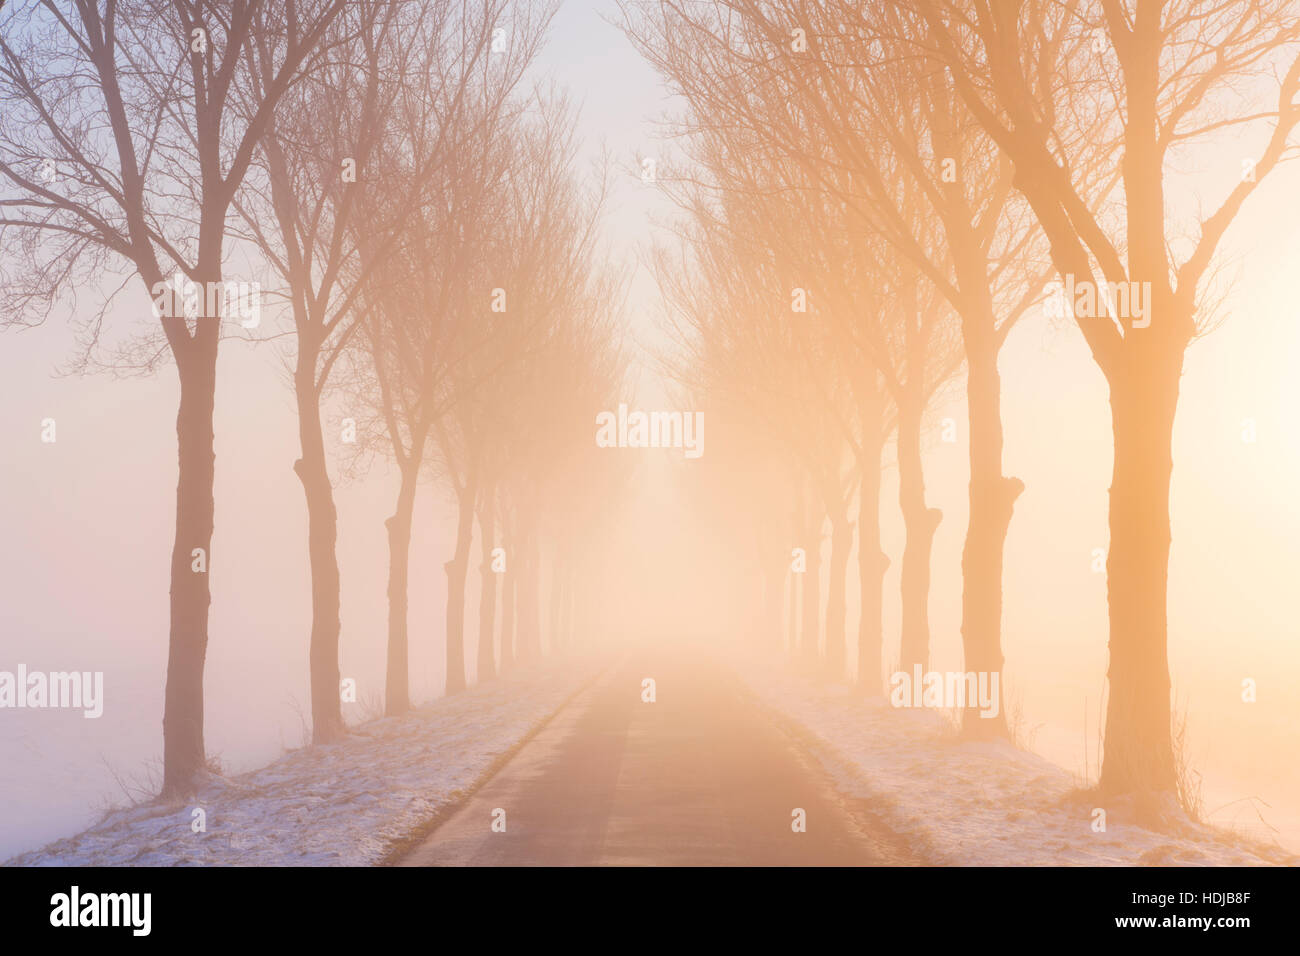 Einer geraden Straße und eine Reihe von Bäumen an einem nebligen Morgen bei Sonnenaufgang. Ein typisches Bild von der historischen Beemster Polder in den Niederlanden. Diese Polder wa Stockfoto